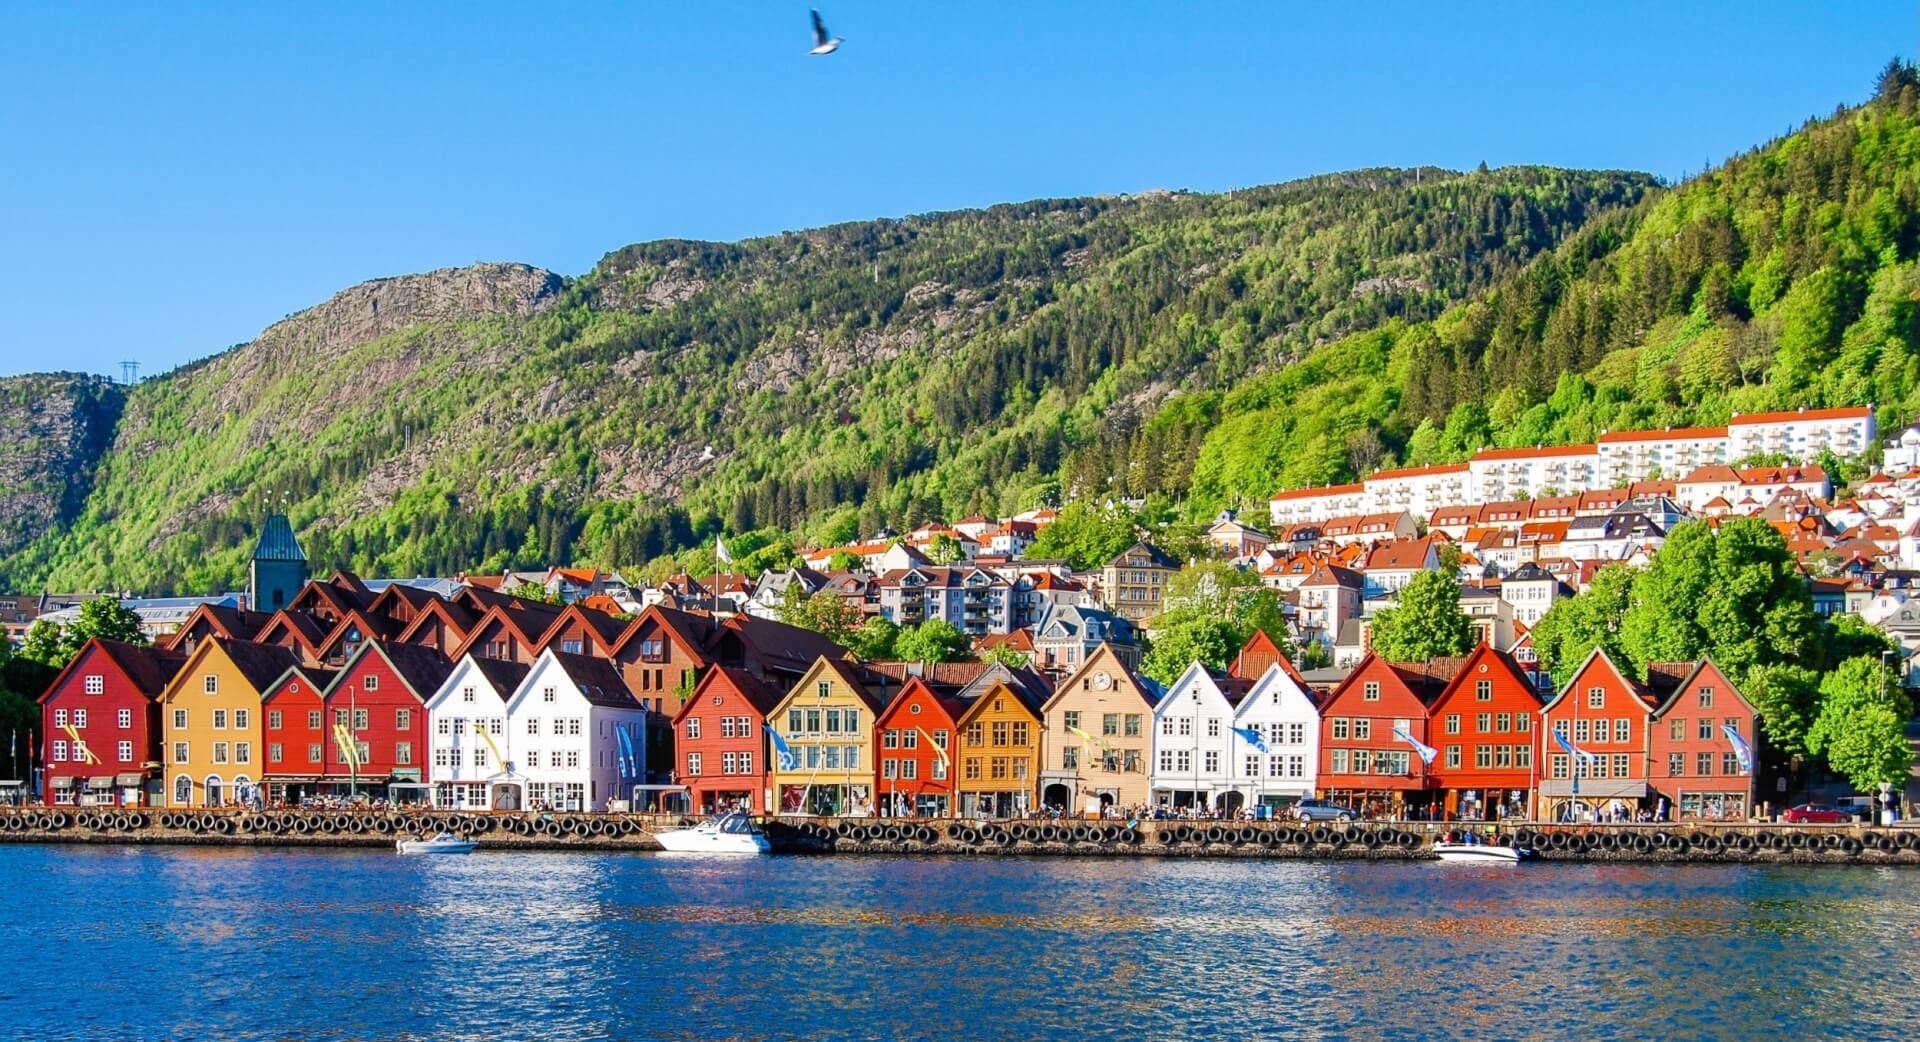 Bergen: Bryggen district